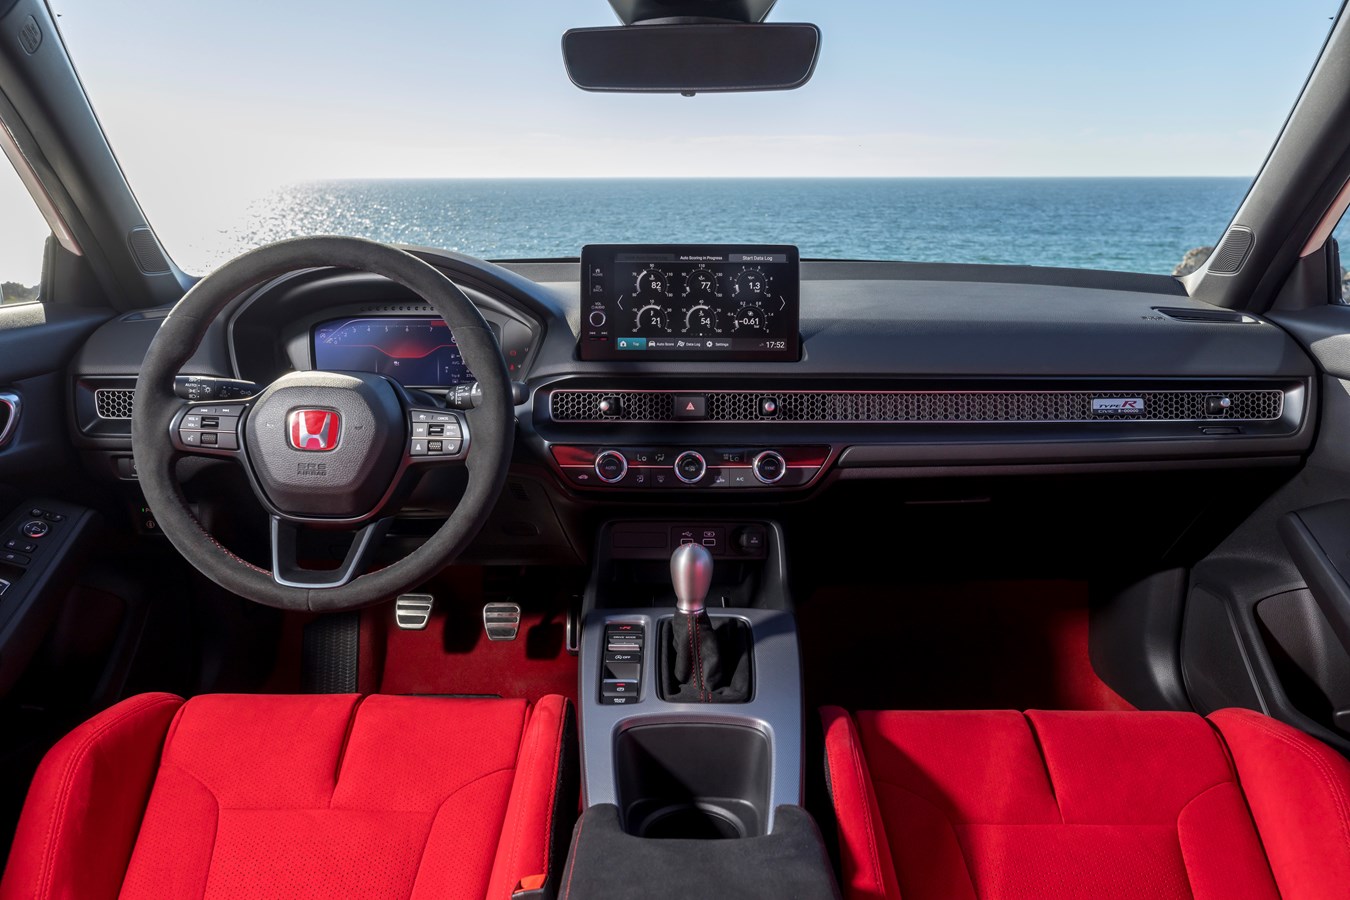 Honda Civic Type R interior